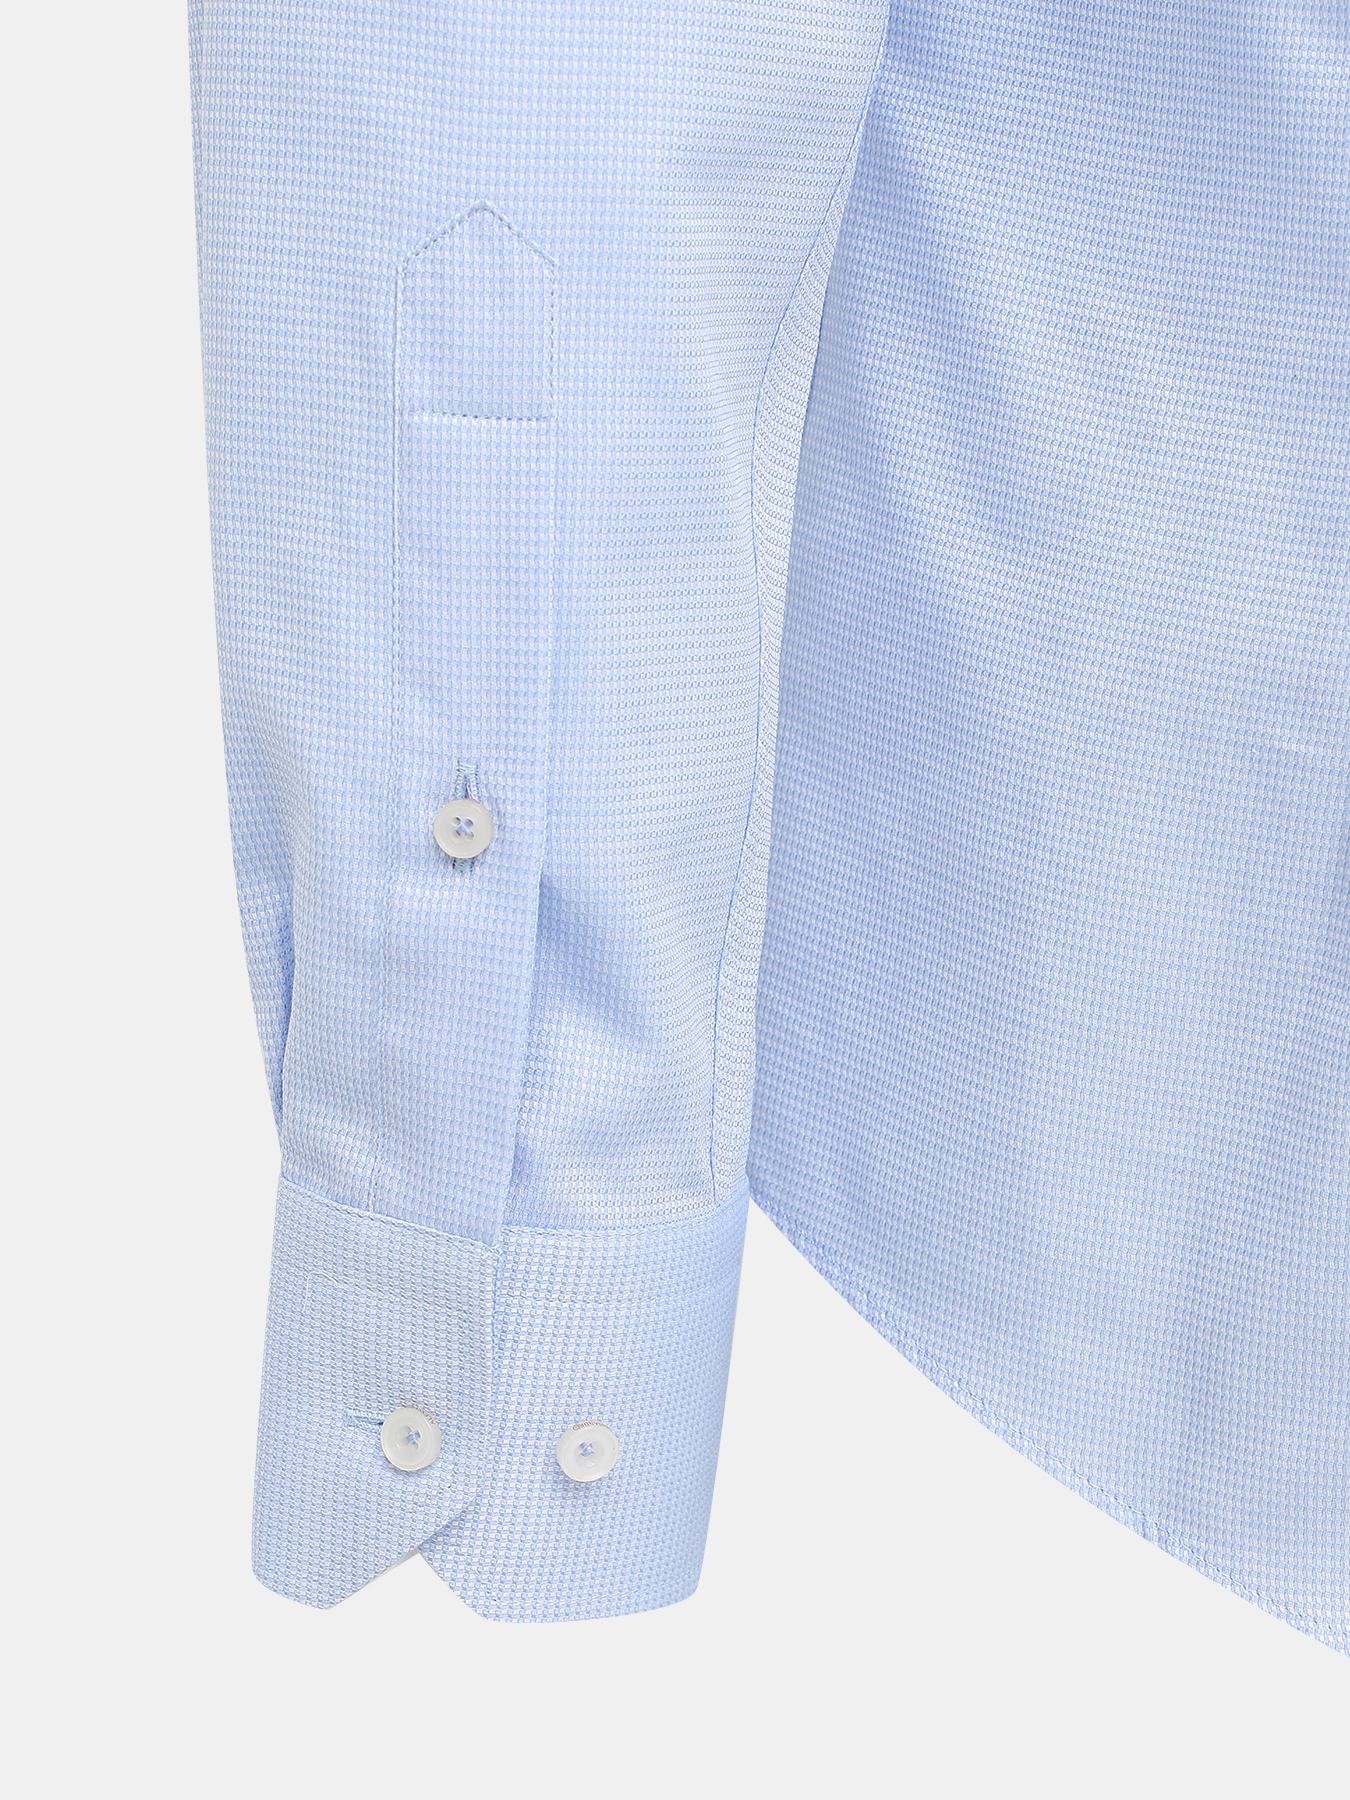 Рубашка Alessandro Manzoni 413829-051, цвет голубой, размер 56 - фото 3